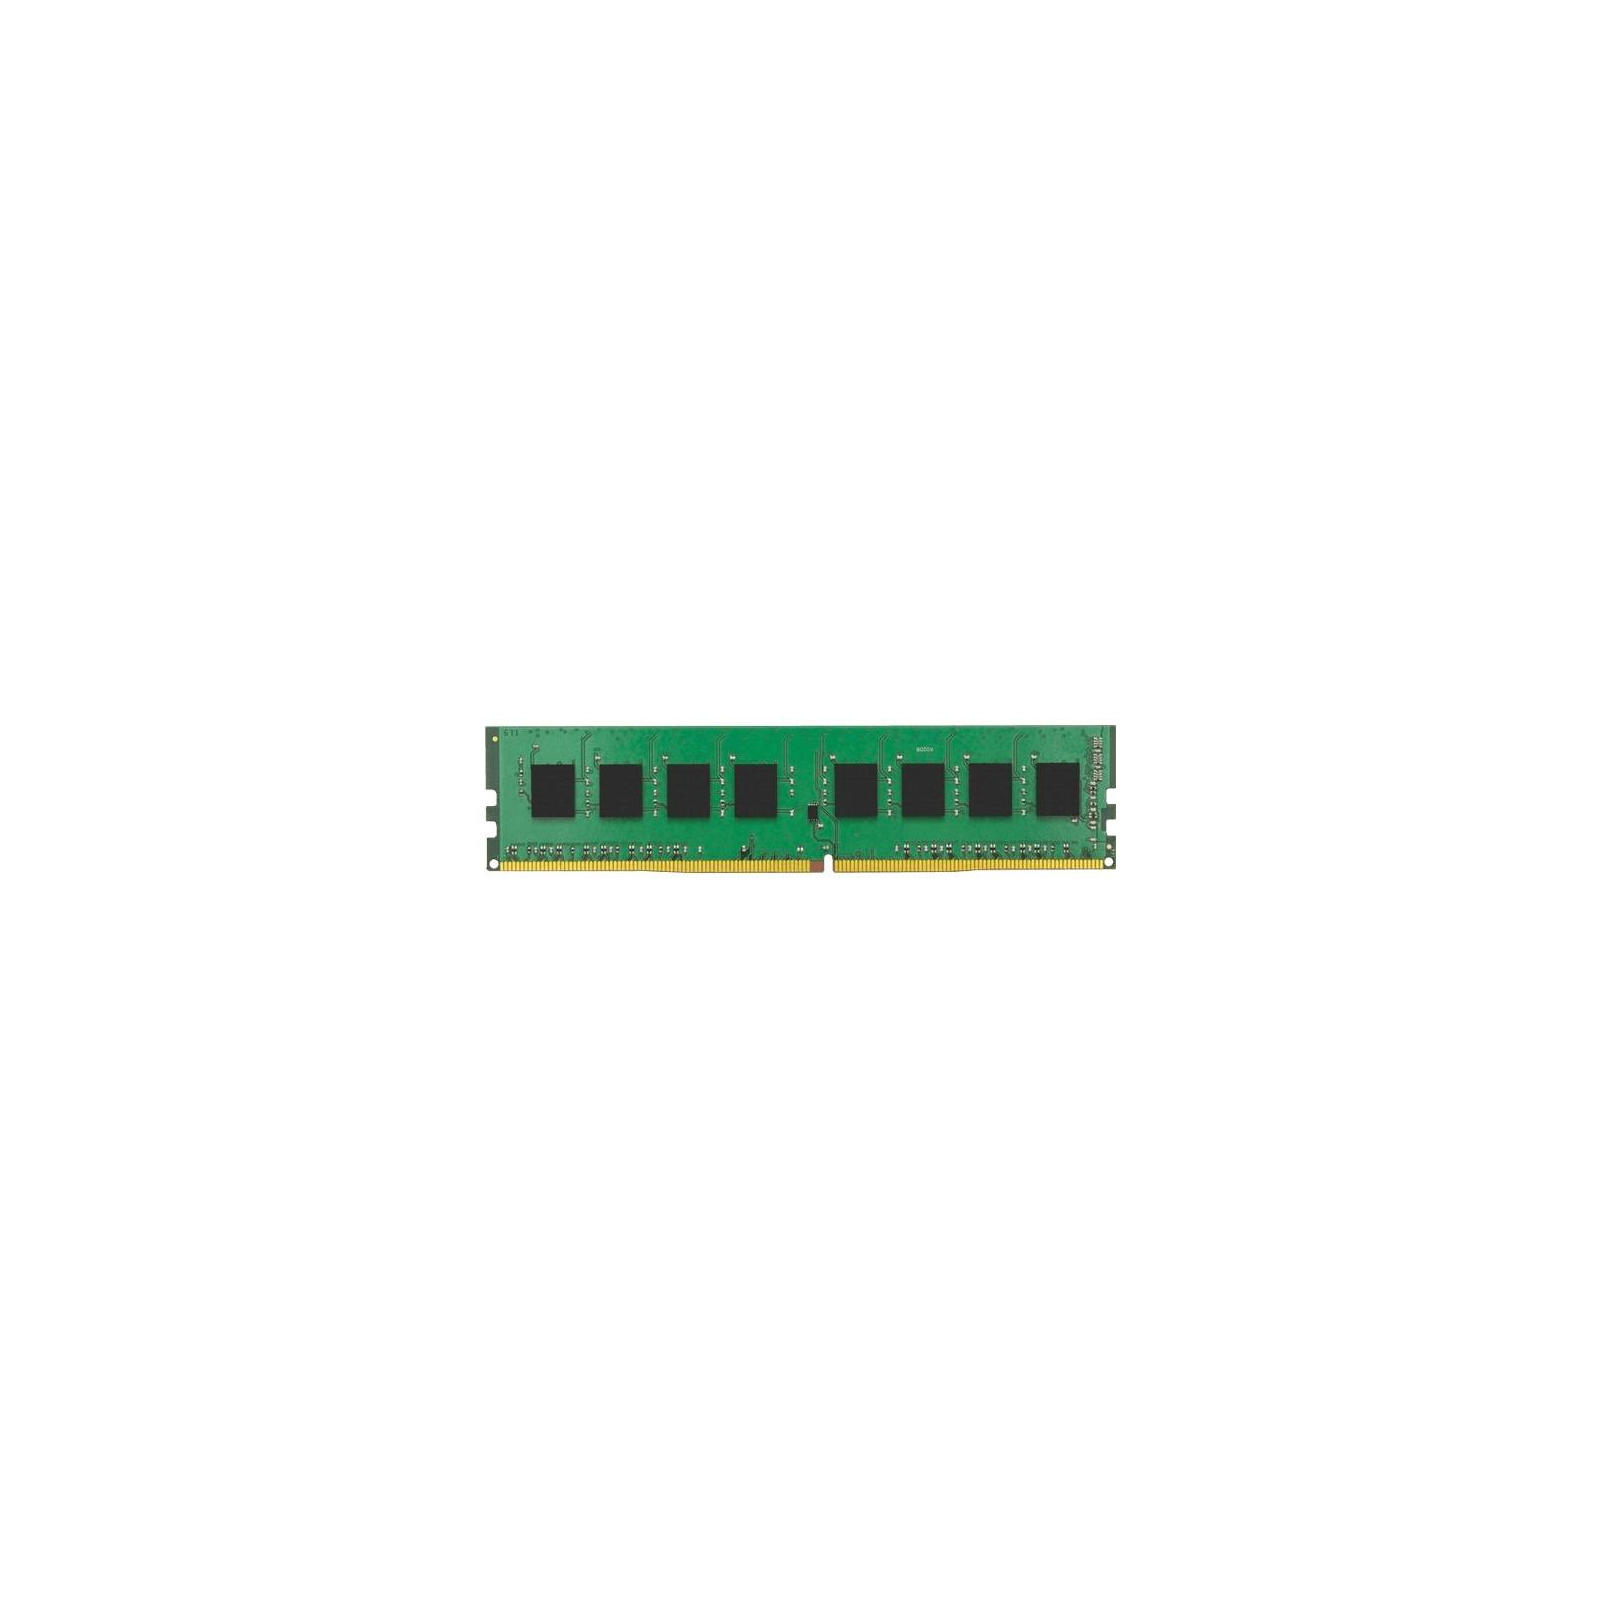 Модуль пам'яті для сервера DDR4 8Gb ECC UDIMM 2400MHz 1Rx8 1.2V CL17 Kingston (KSM24ES8/8ME)